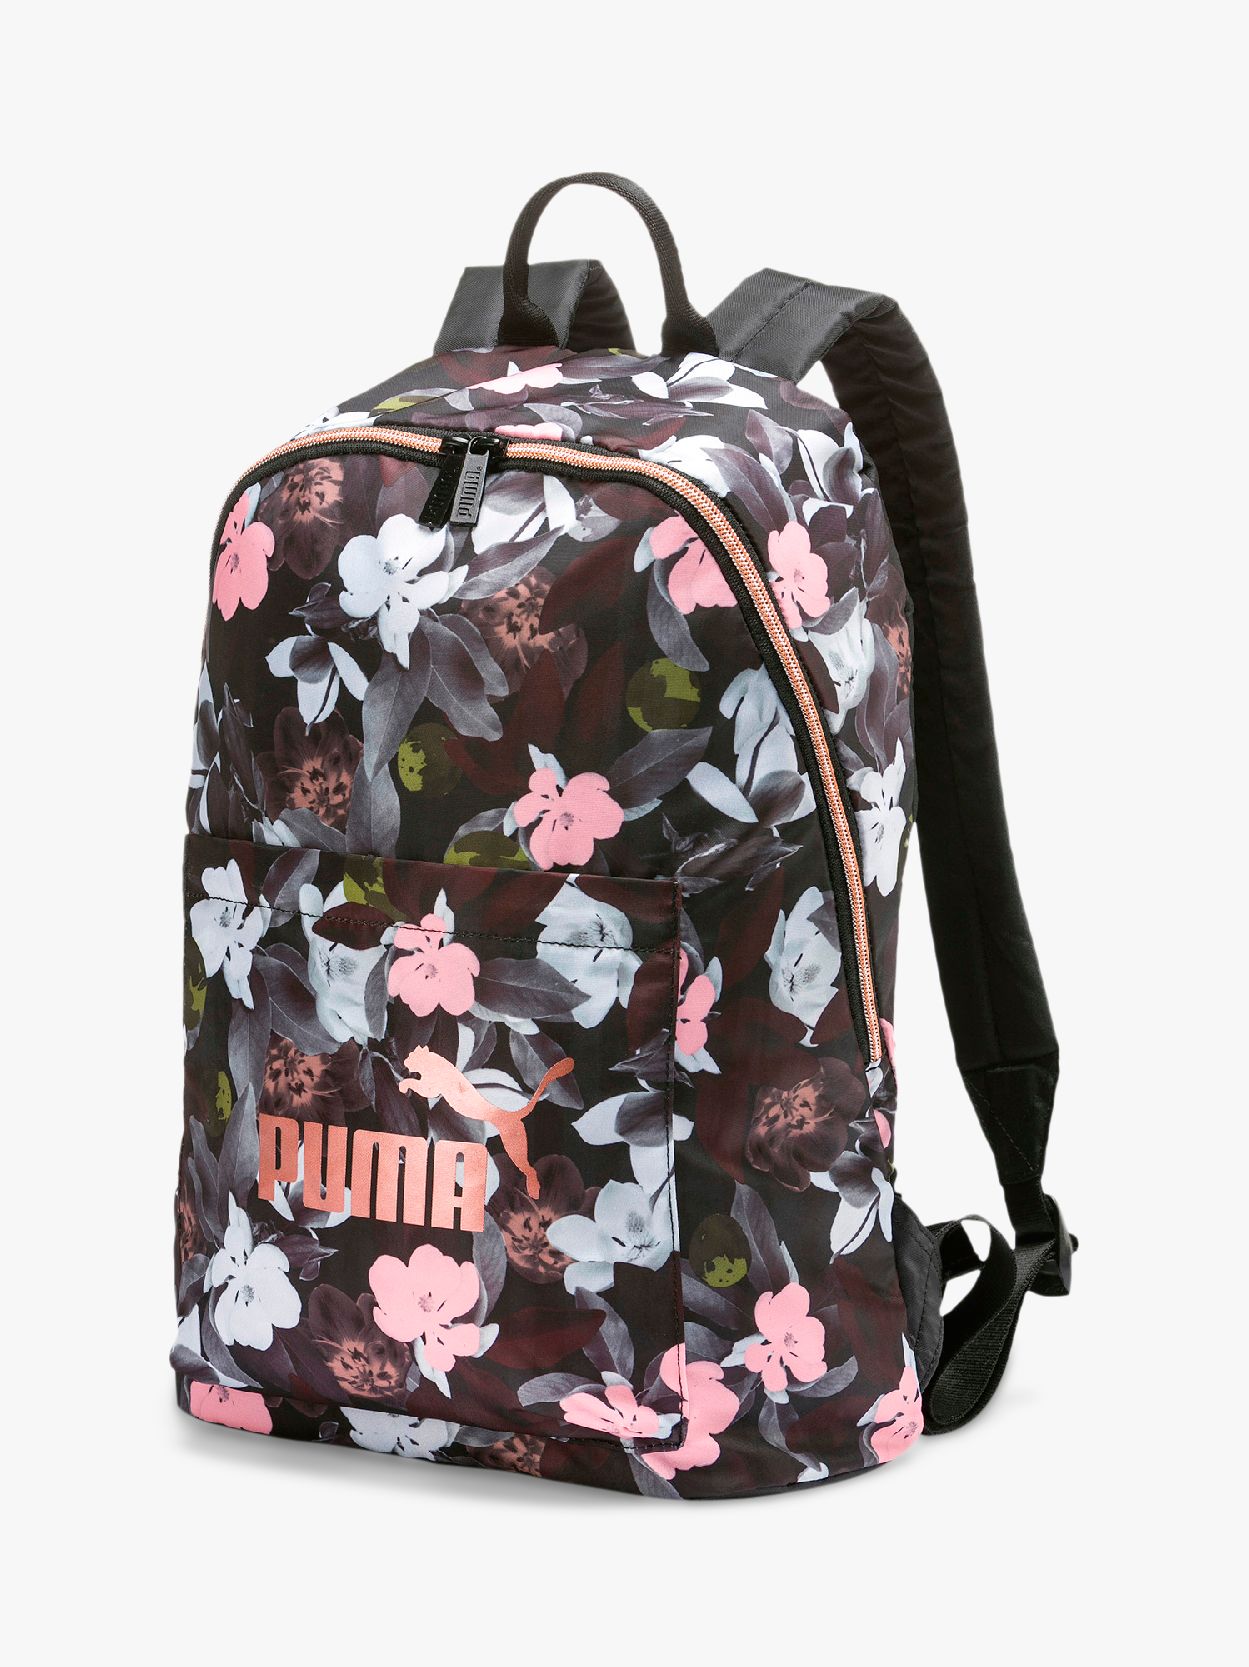 puma kid backpack